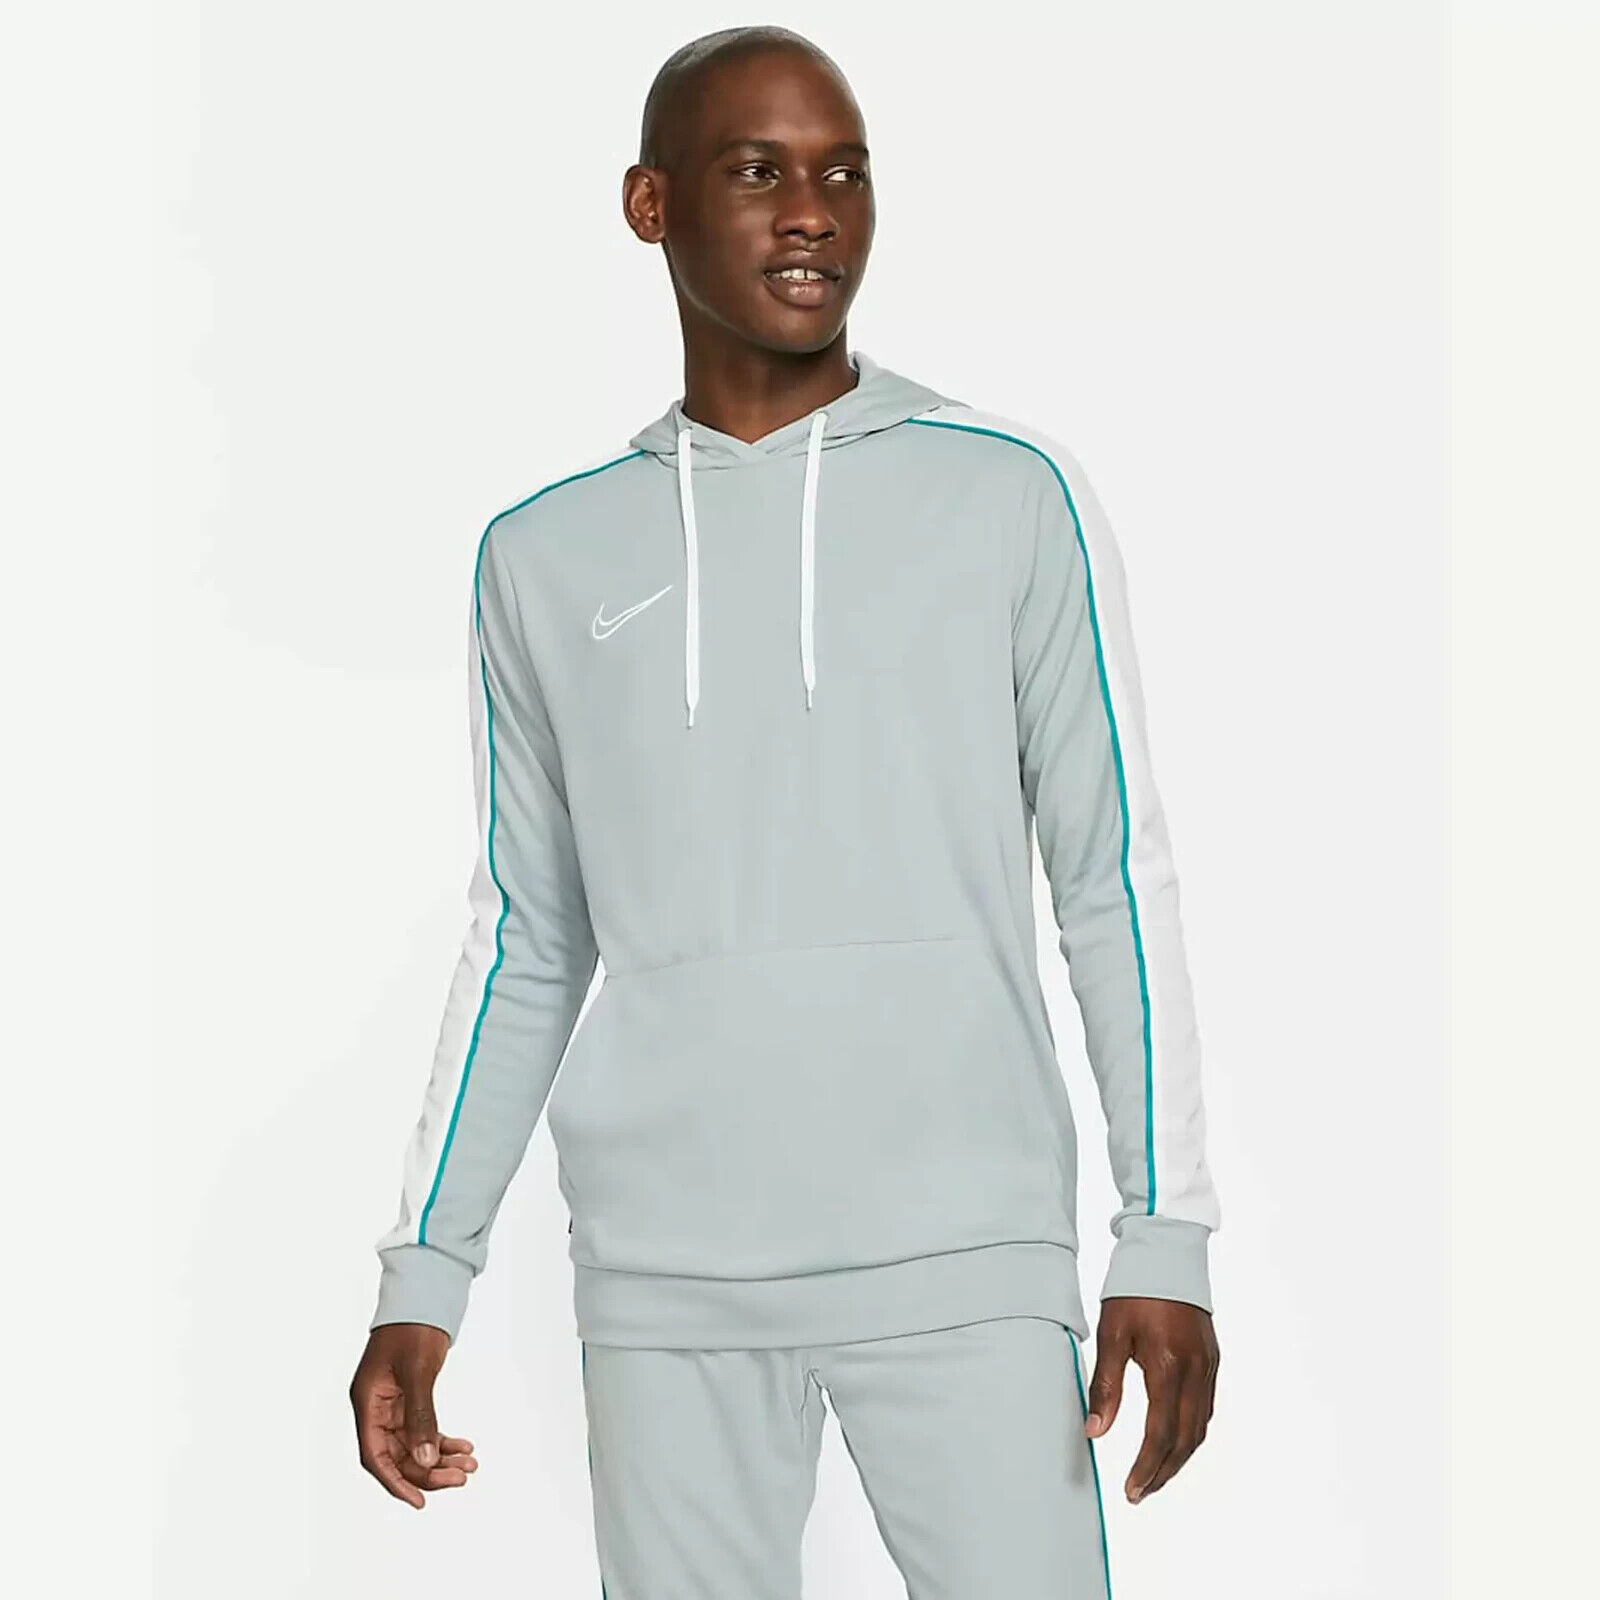 Inspiratie onderdelen zoals dat Nike NK Dry Academy Hoodie CZ0966 019 sweatshirt Size Medium | eBay